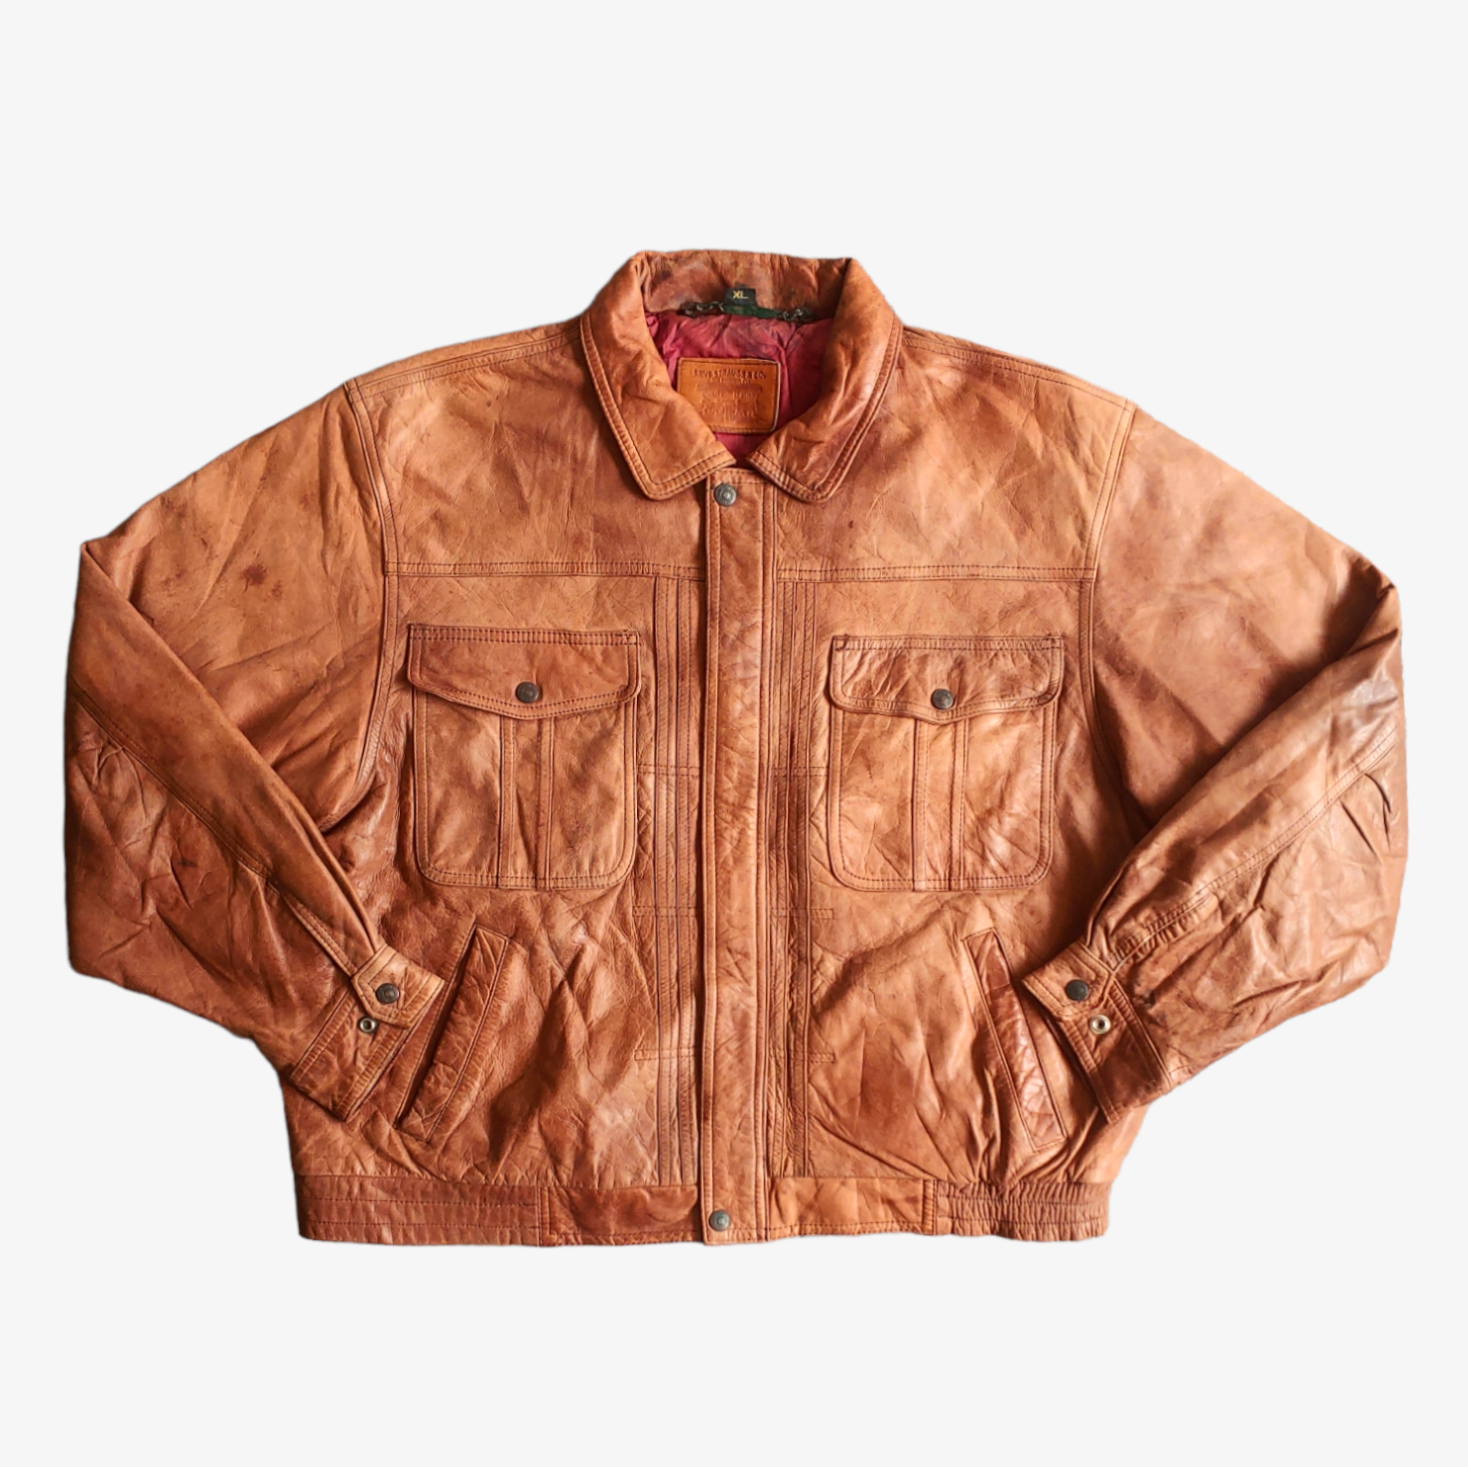 Vintage 90s Levis Dark Brown Leather Trucker Jacket - Casspios Dream